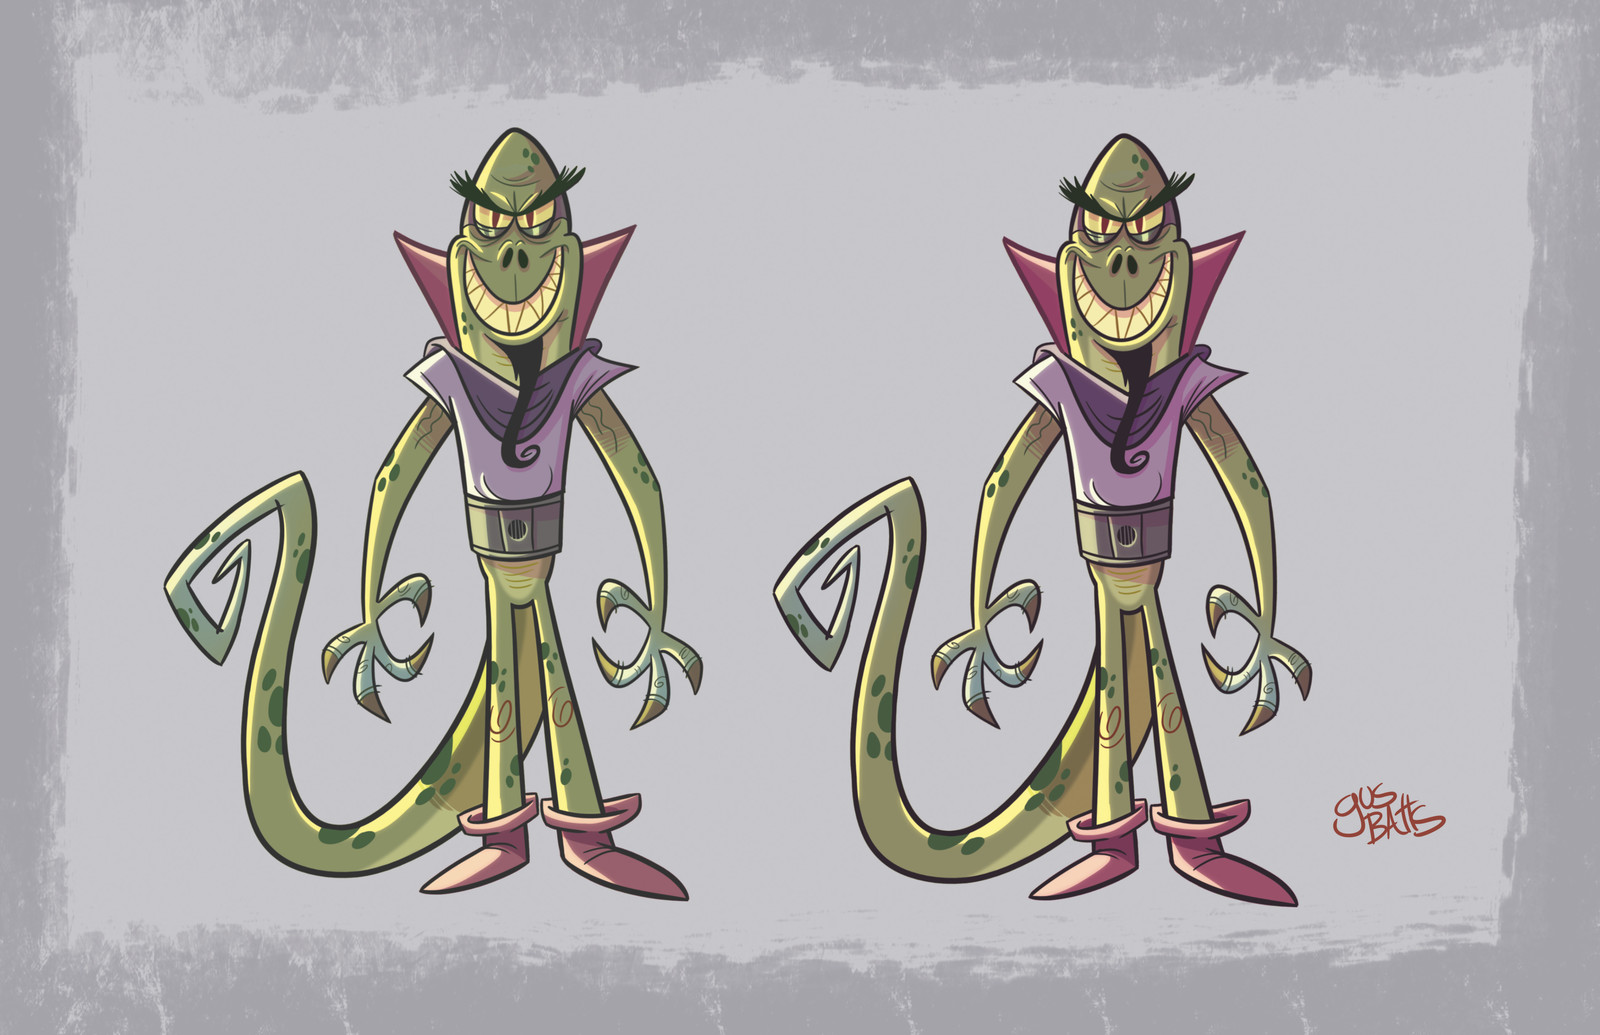 Lazard the lizard (cartoon show character design)